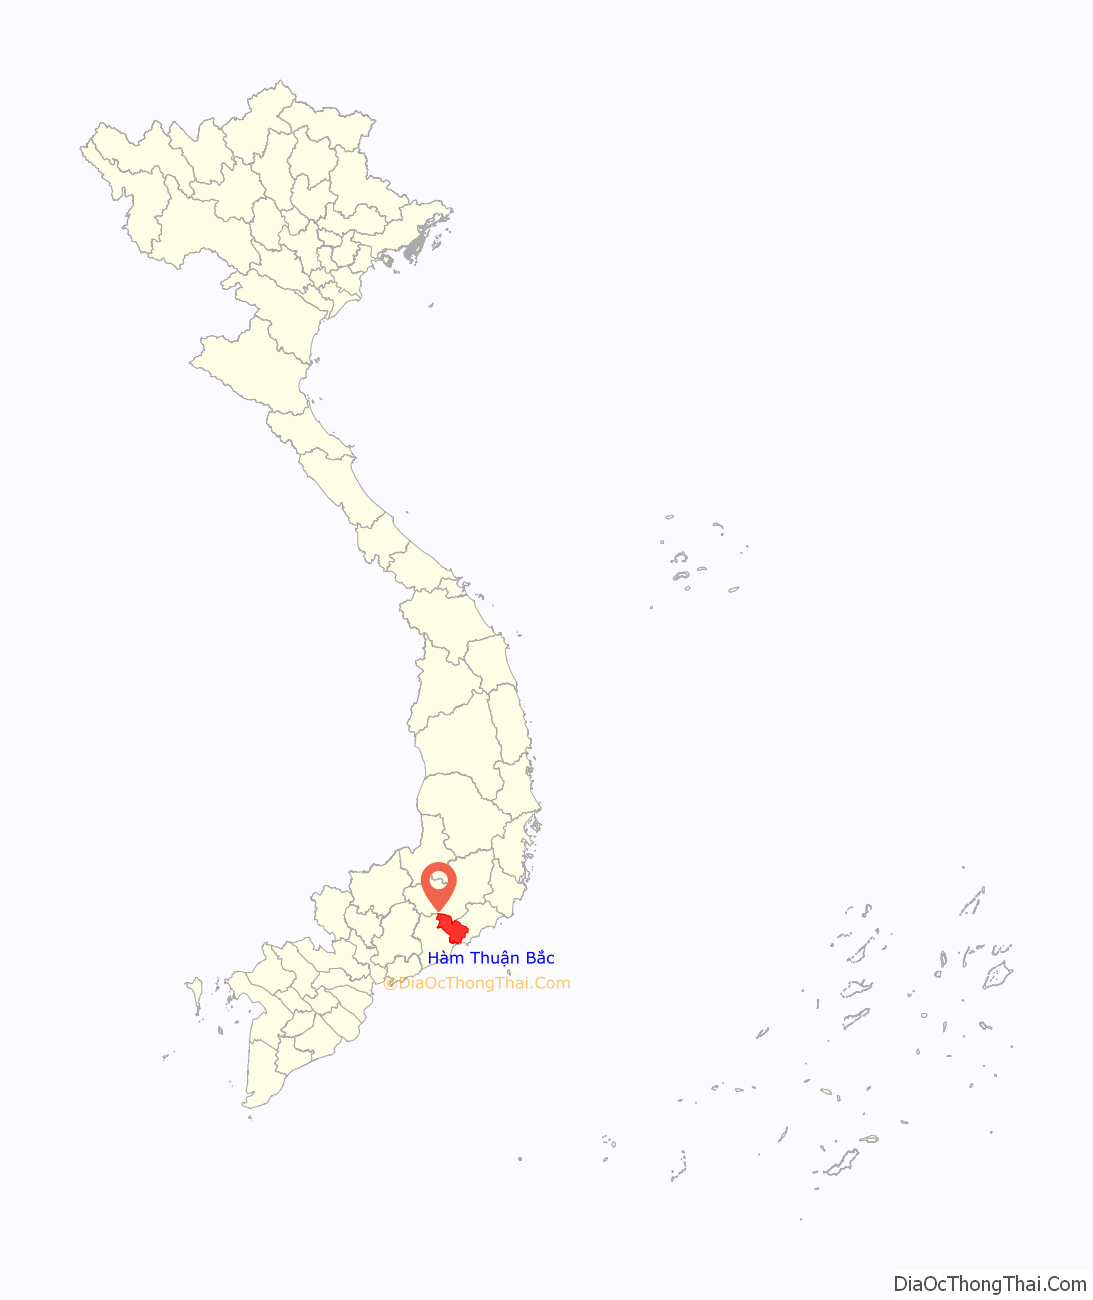 Huyện Hàm Thuận Bắc ở đâu? Vị trí của huyện Hàm Thuận Bắc